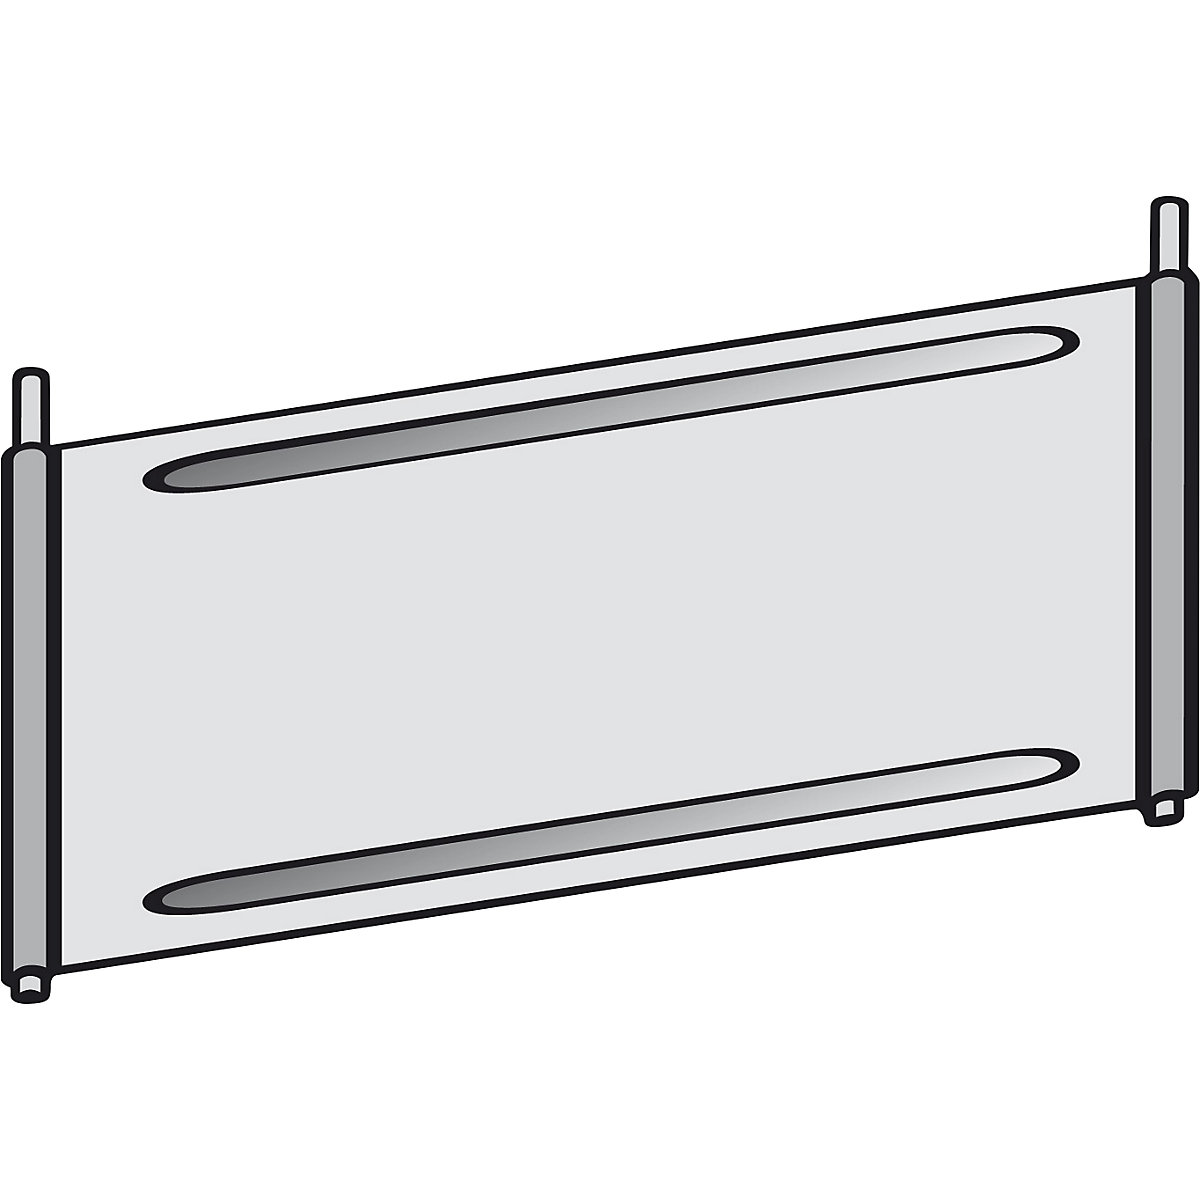 Chapa separadora para estantería de compartimentos – hofe